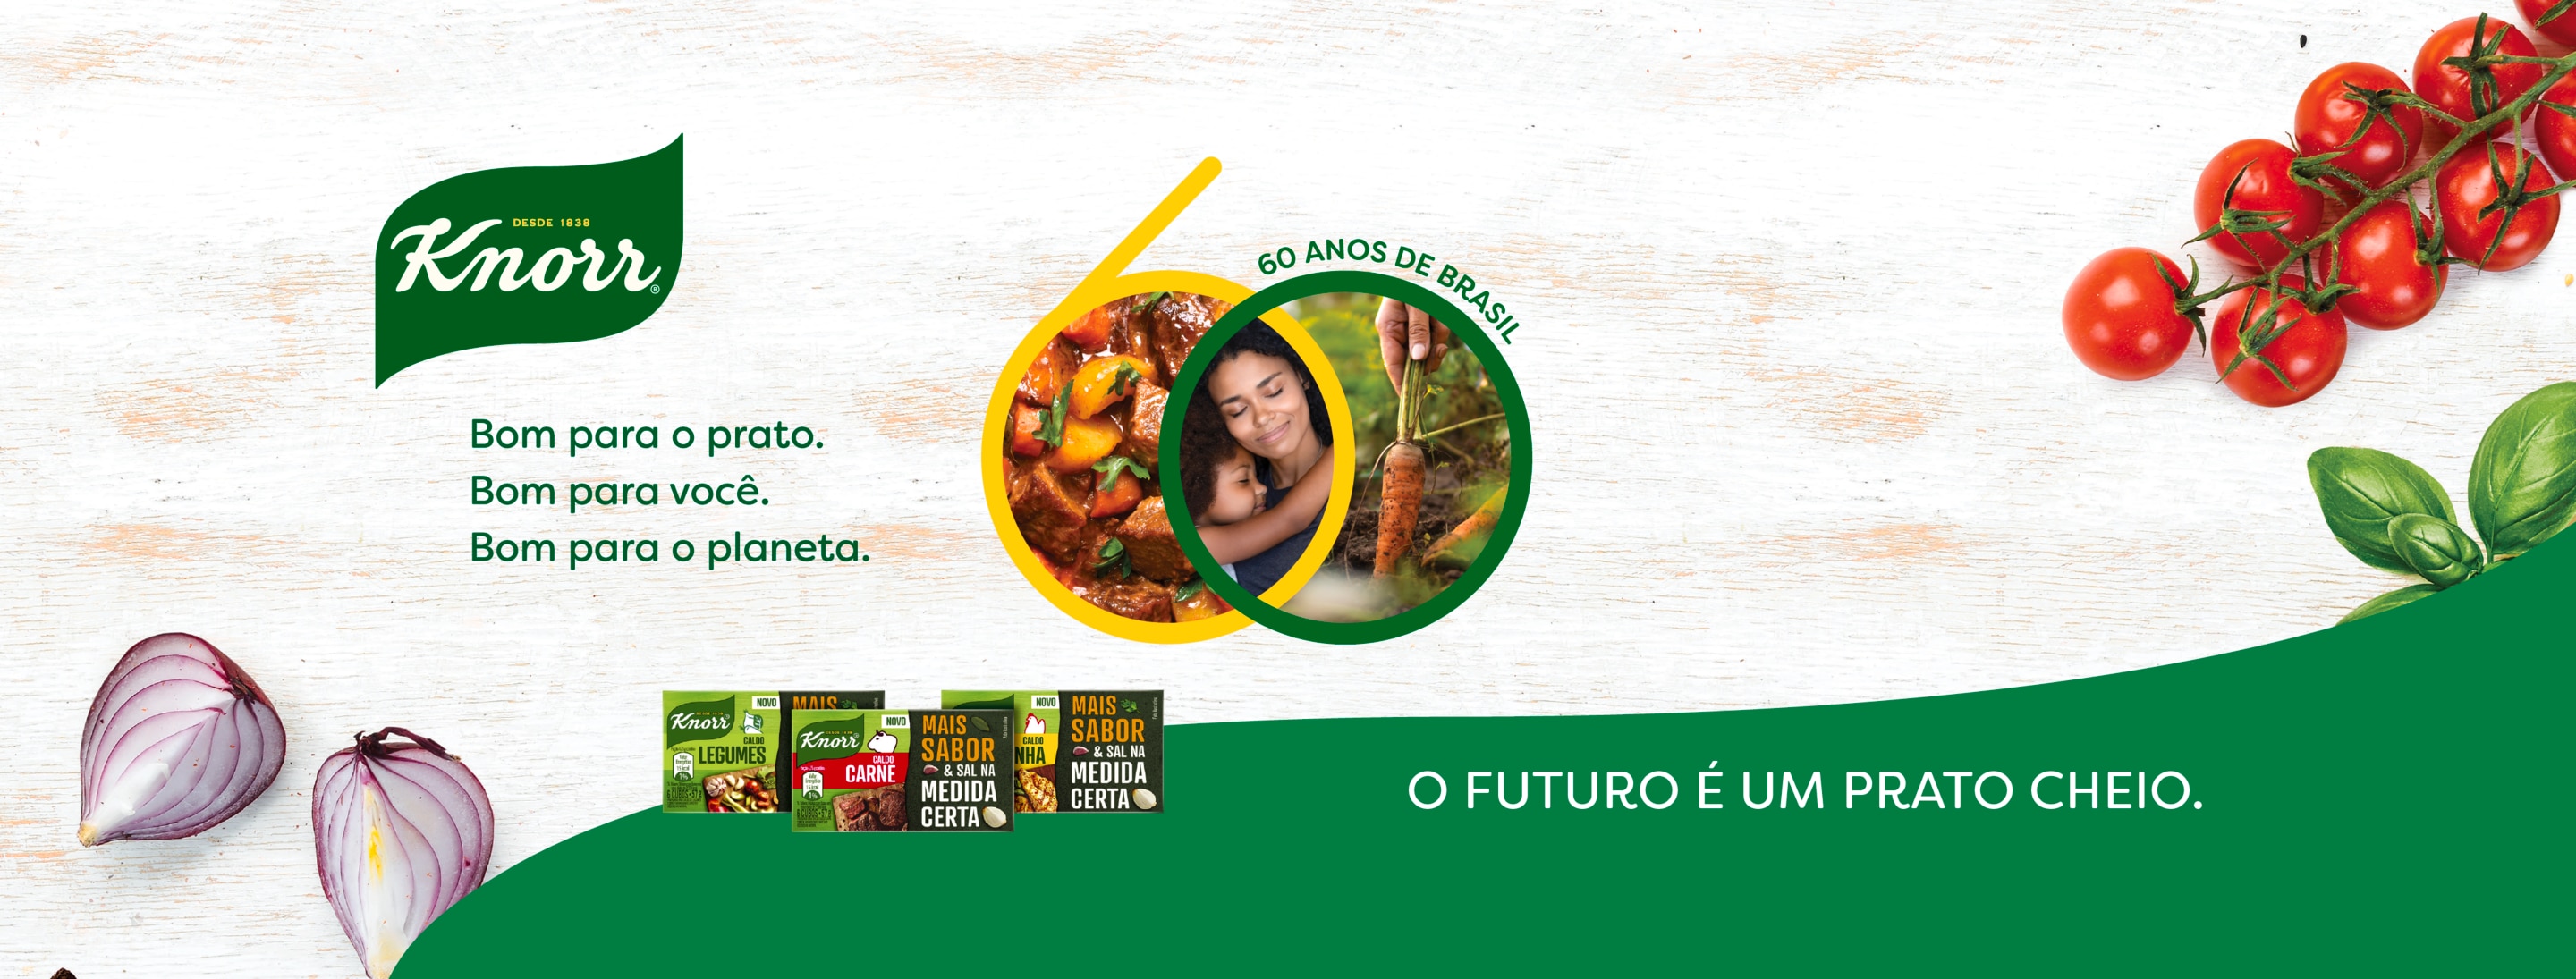 60 anos de Knorr no Brasil